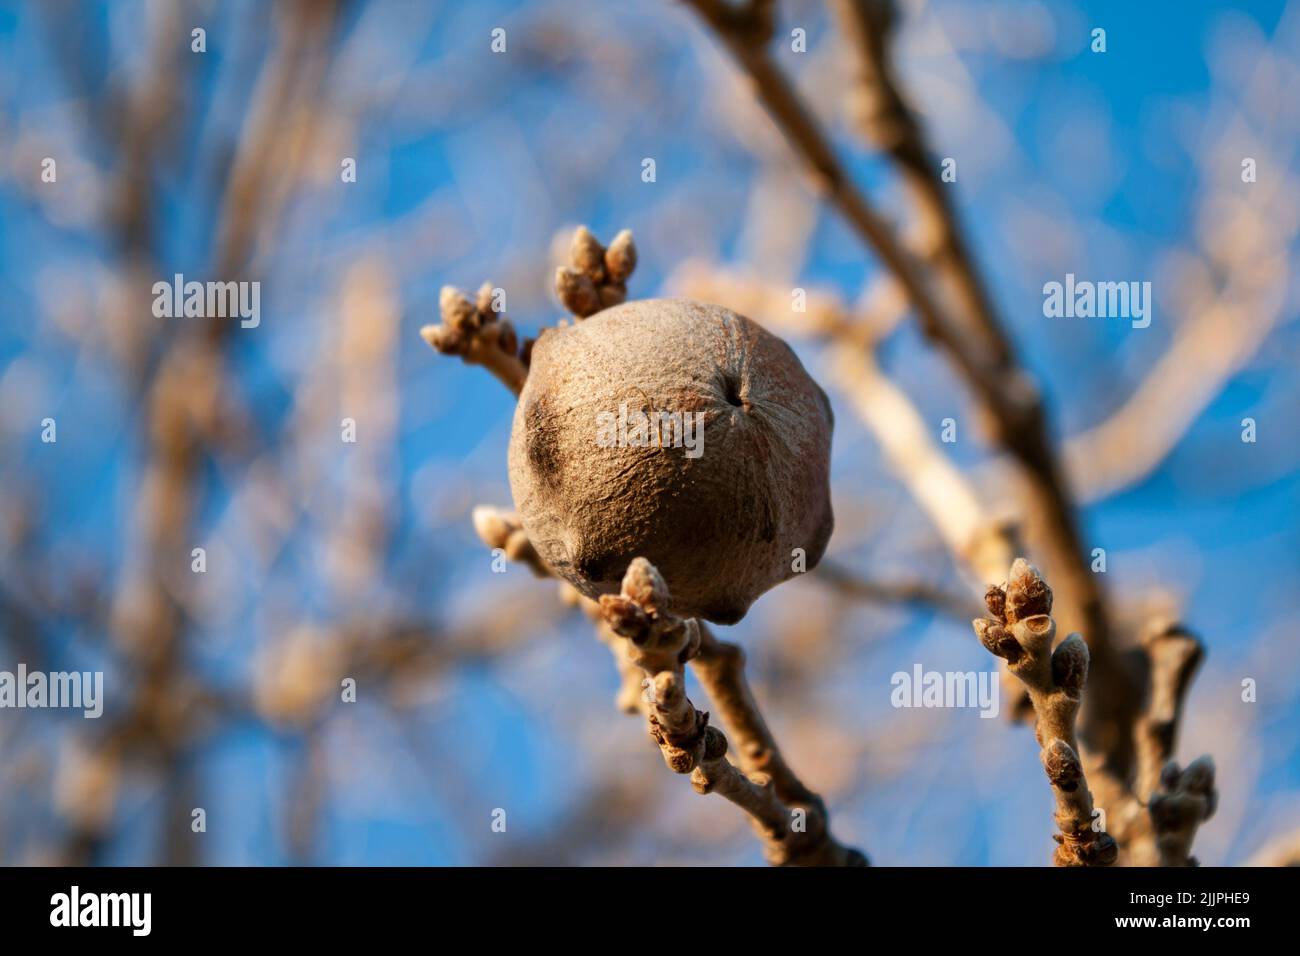 A shallow focus of an oak apple Stock Photo